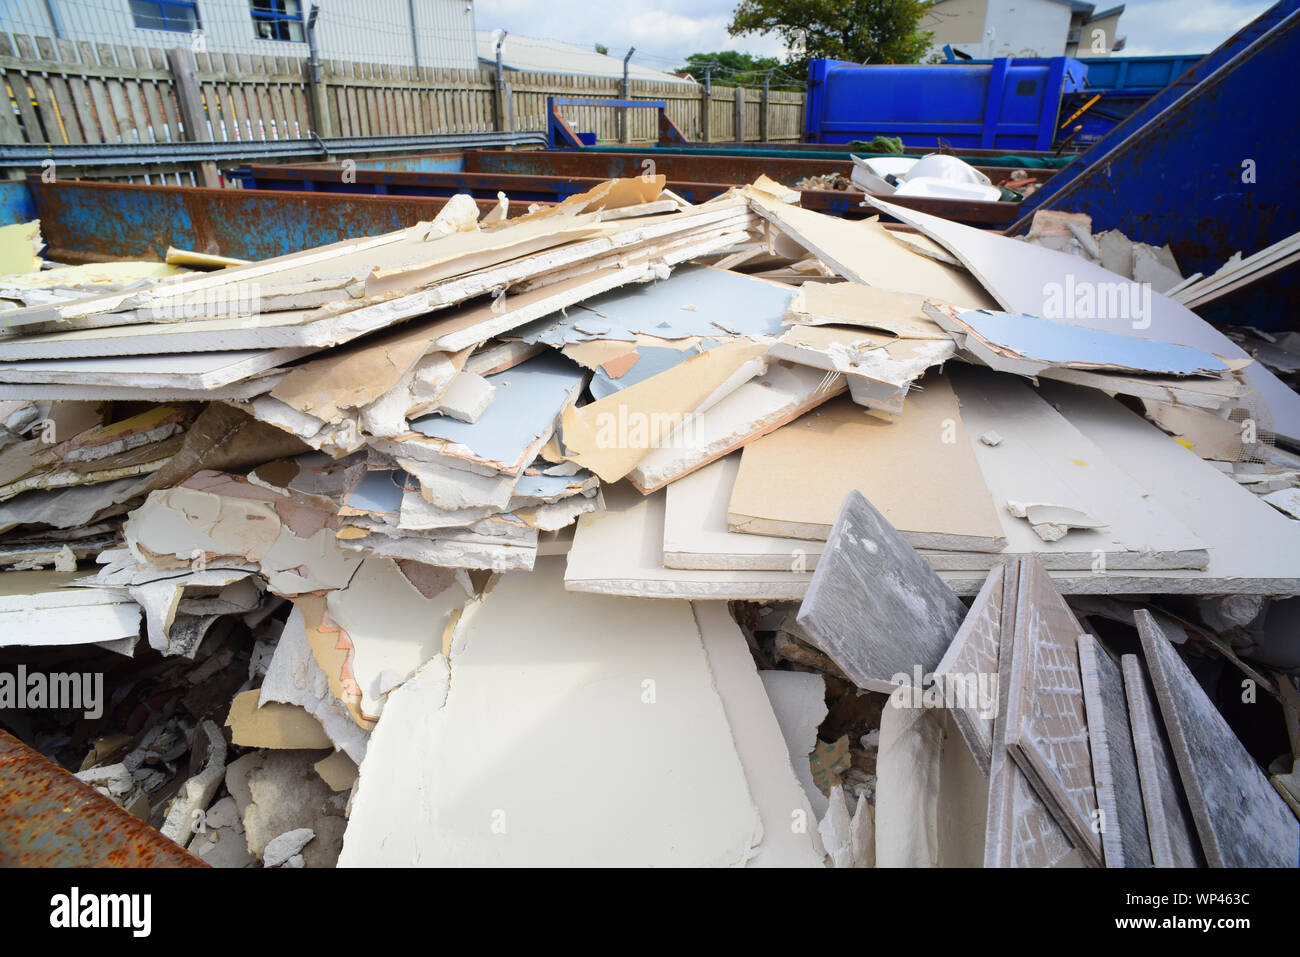 Aller plein de conseil à plâtre foyer Royaume-Uni centre de recyclage Banque D'Images